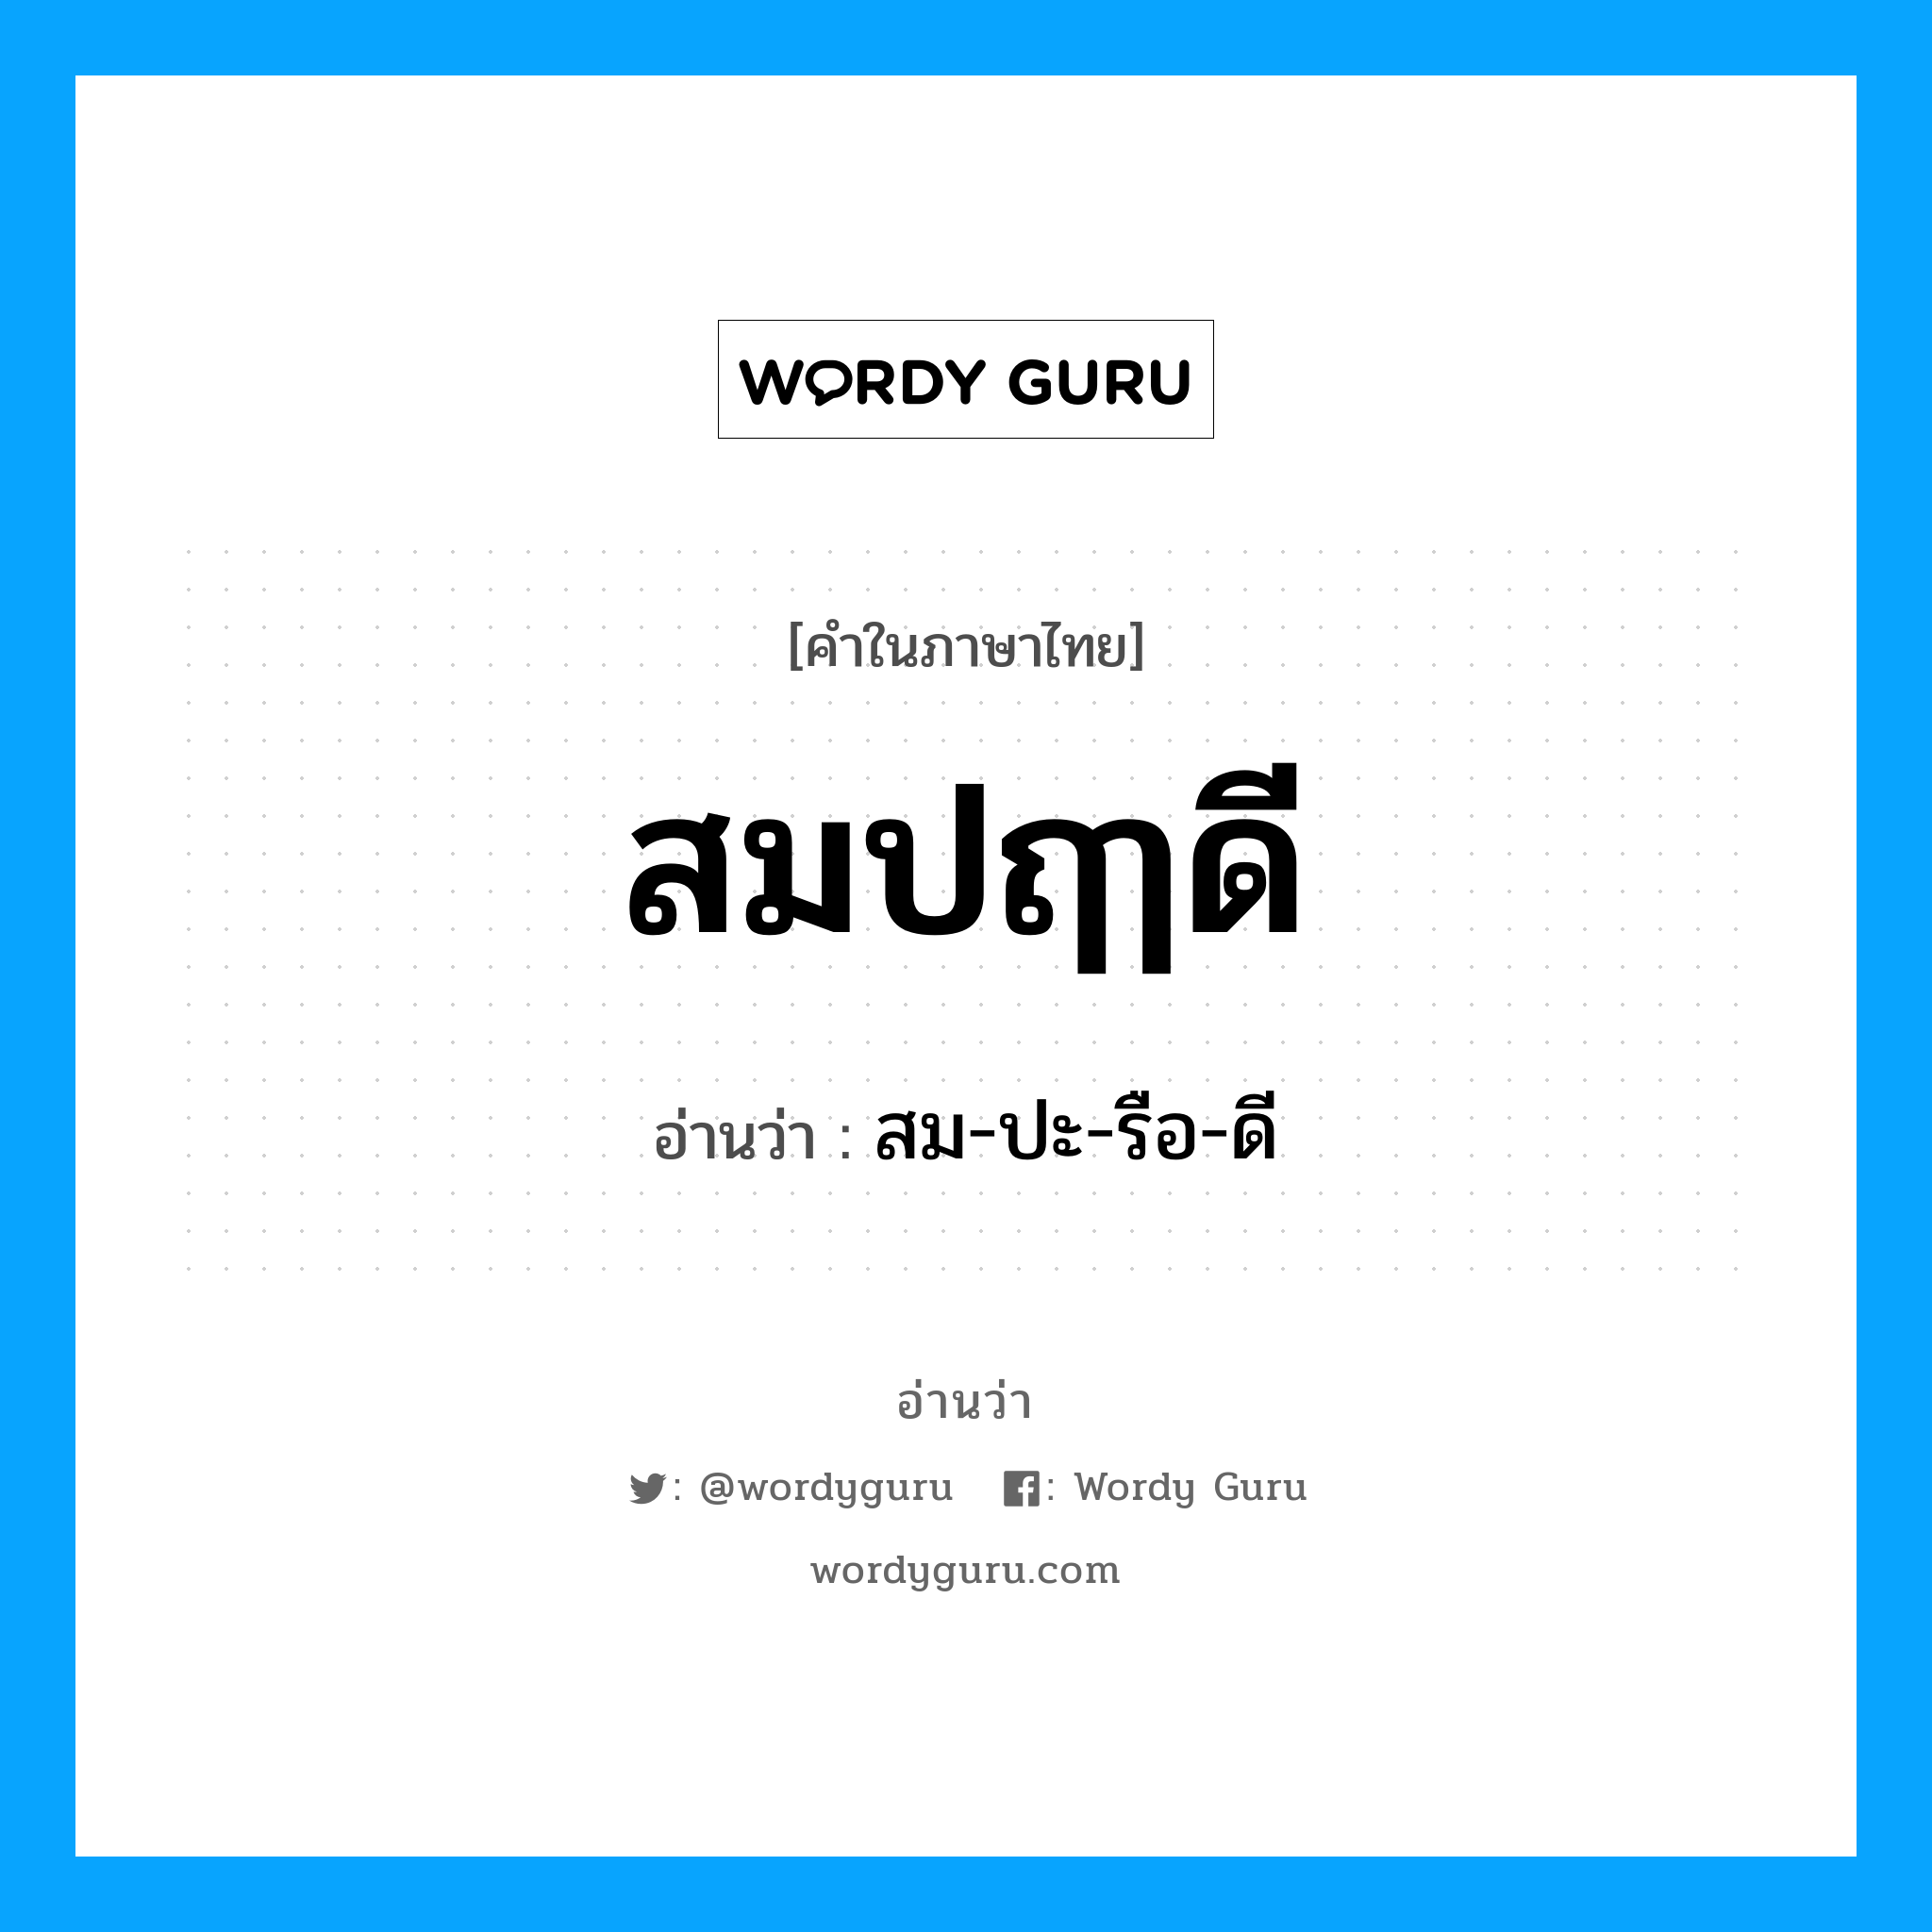 สมปฤๅดี อ่านว่า?, คำในภาษาไทย สมปฤๅดี อ่านว่า สม-ปะ-รือ-ดี